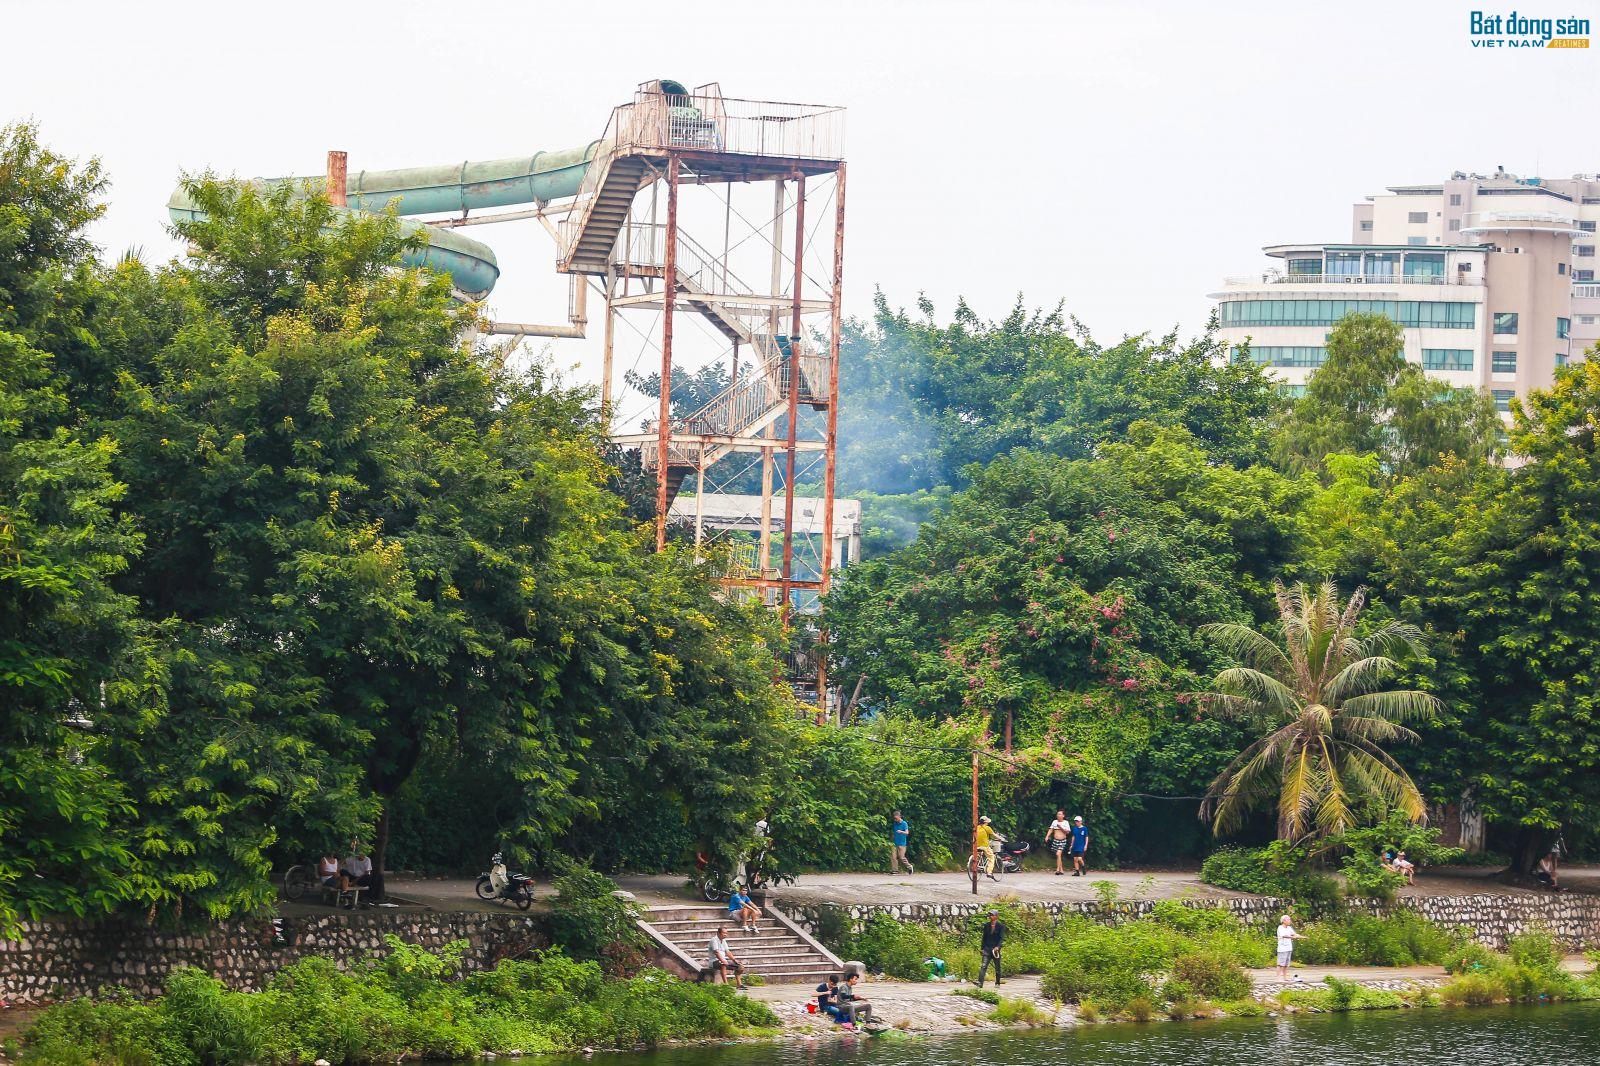 Công viên Tuổi trẻ Thủ đô hoang tàn, bị “xẻ thịt” để kinh doanh